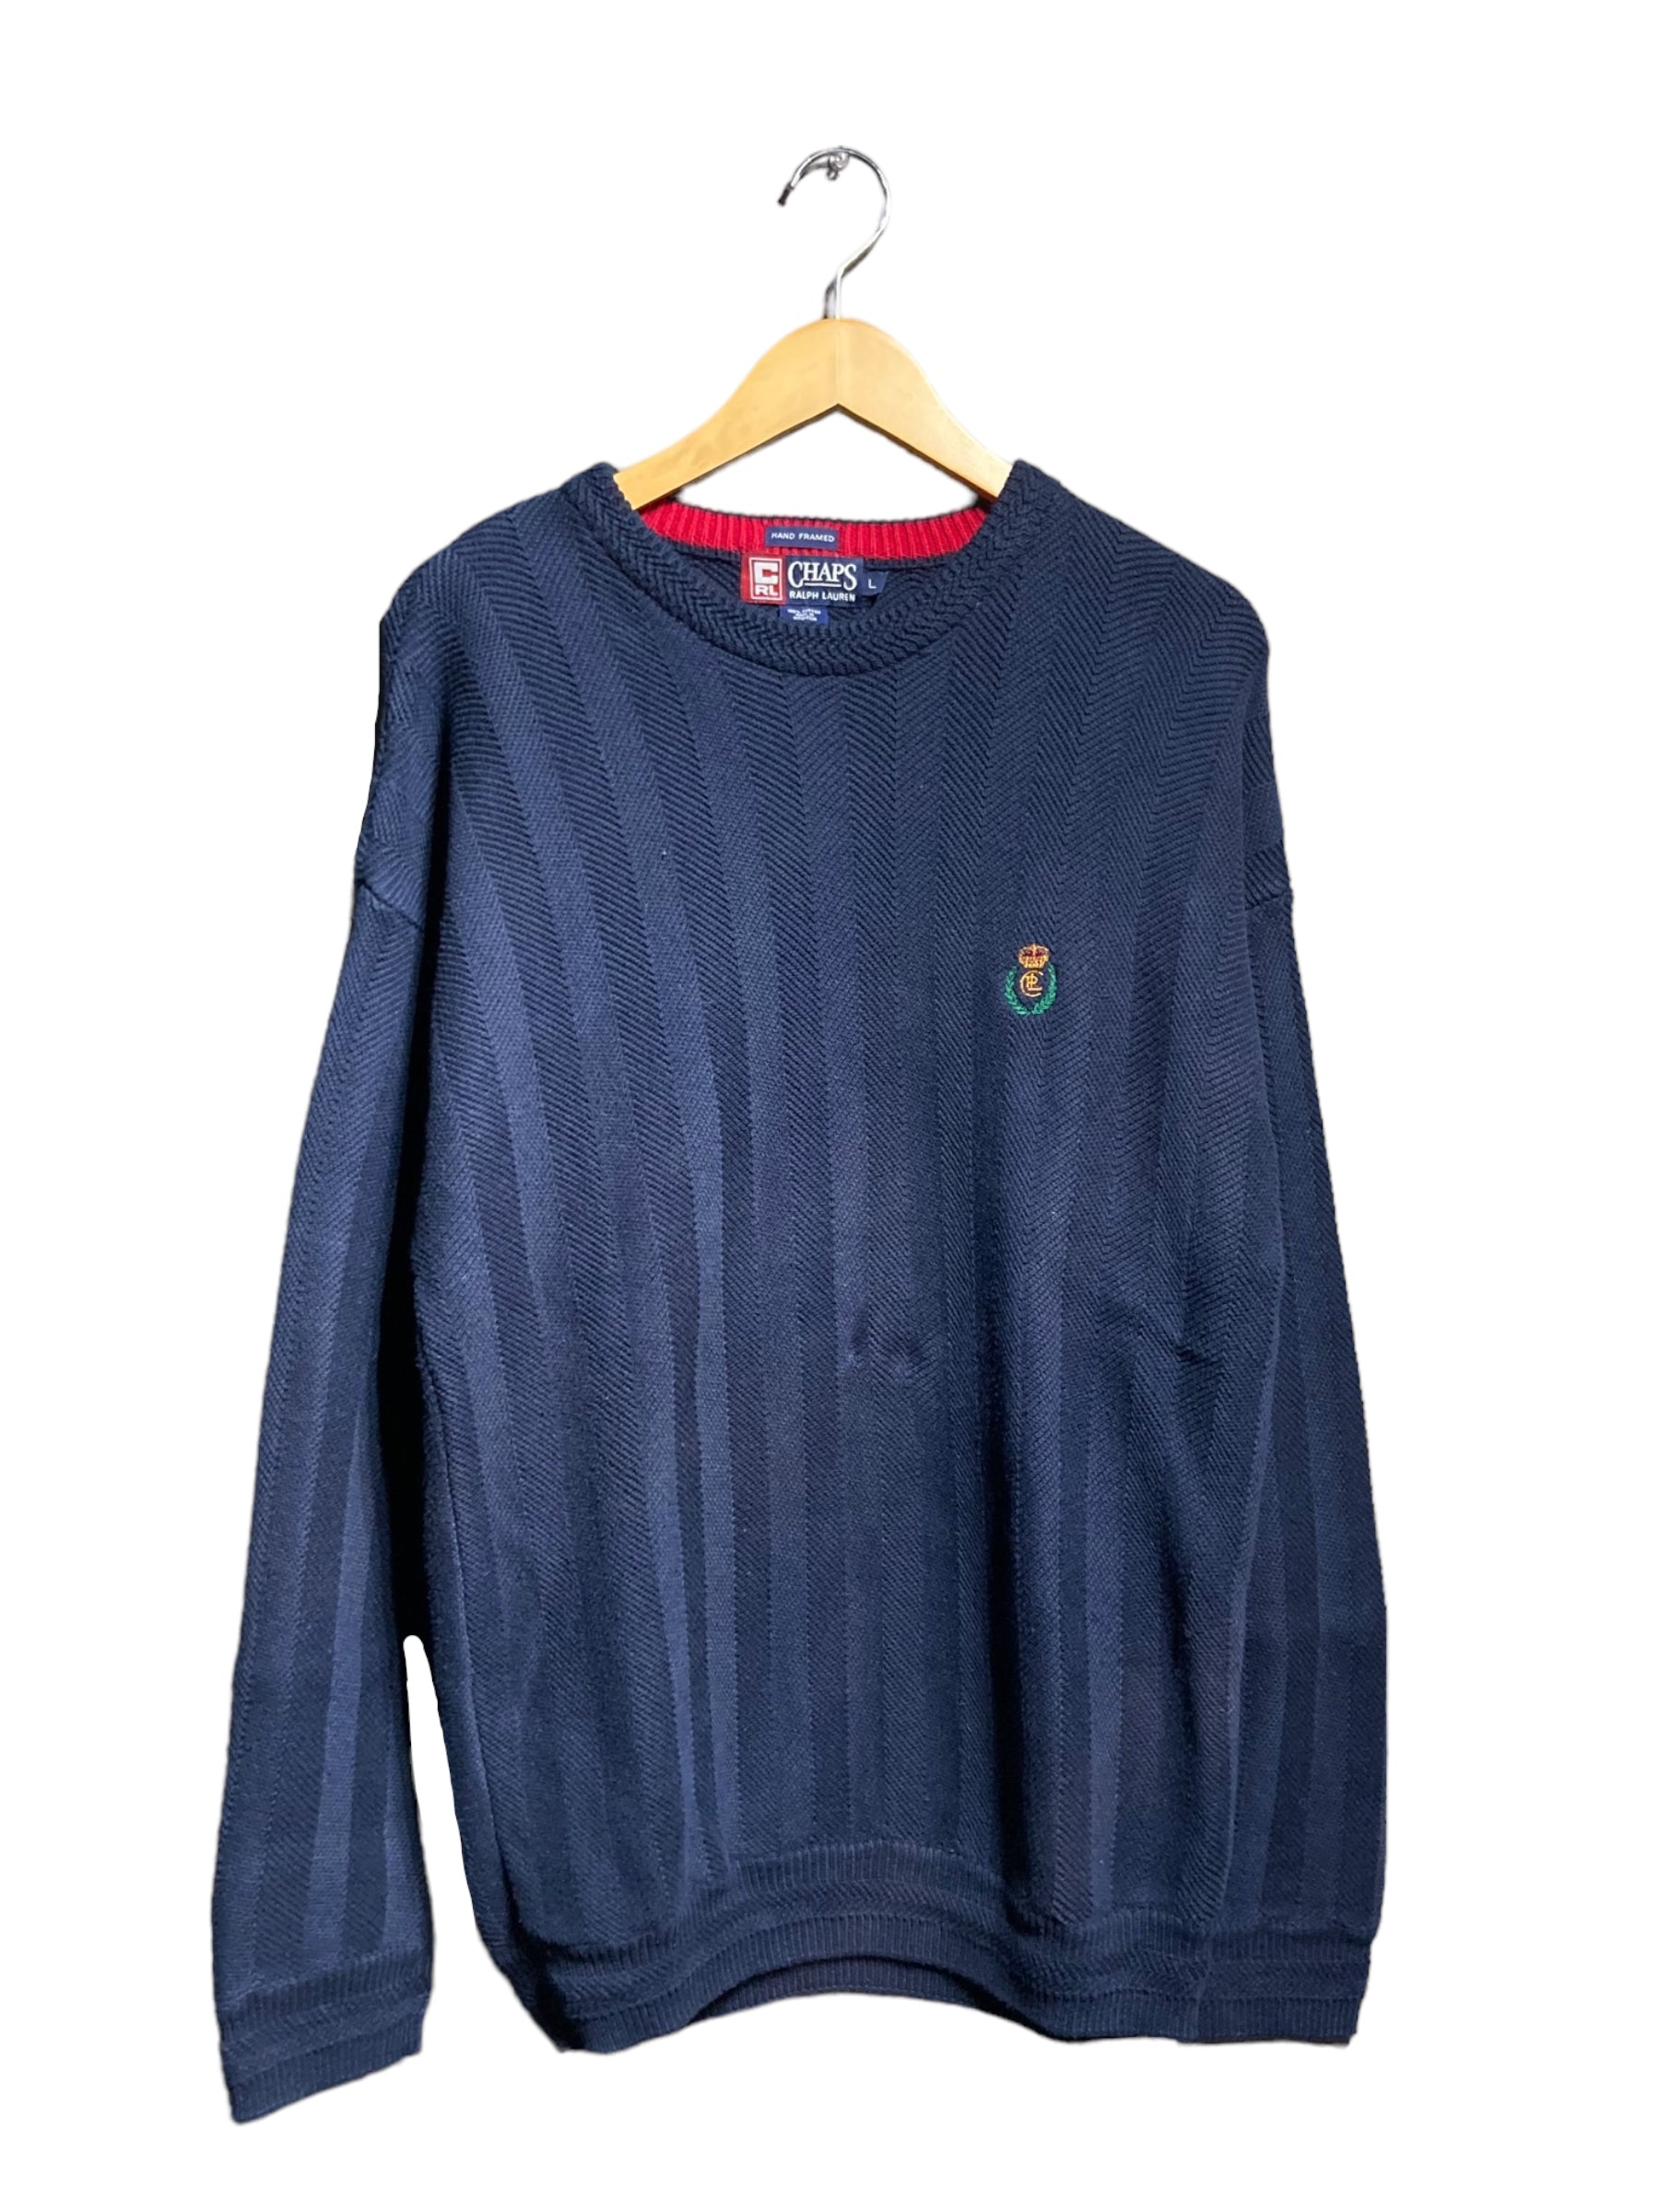 90s CHAPS チャップス knit sweater ニット セーター デザイン